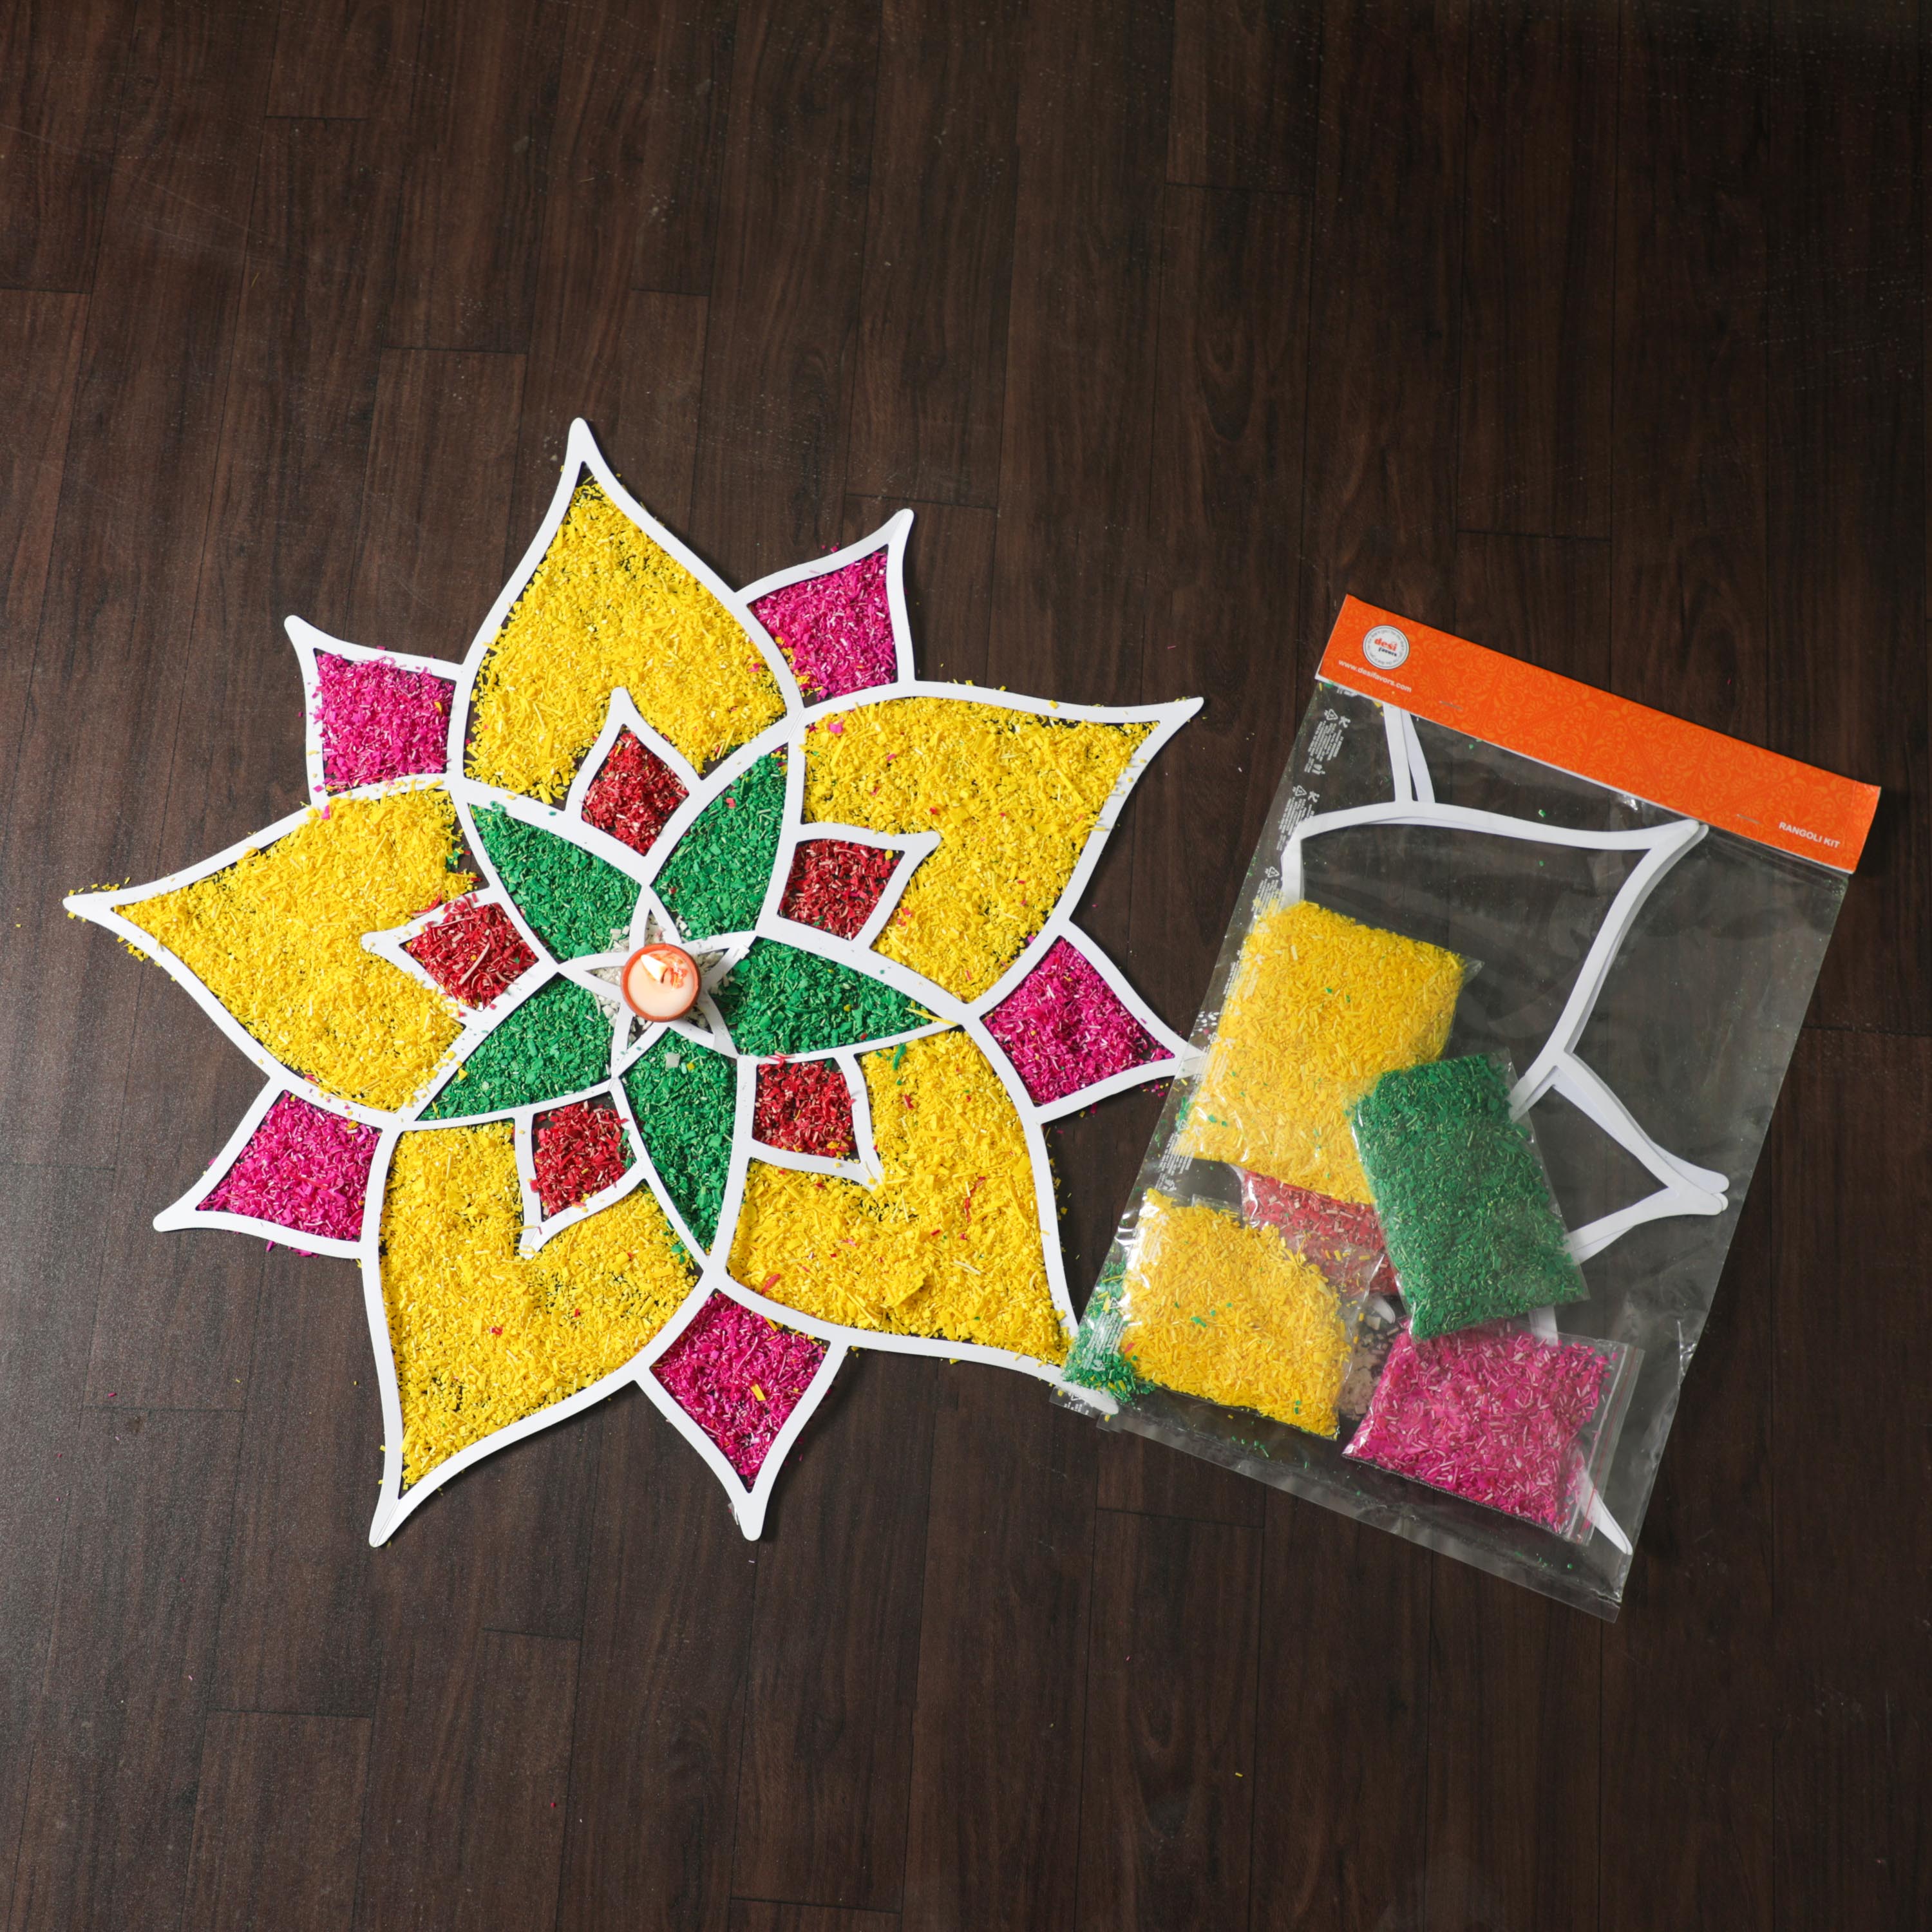 Muggu Kolam Cutout with Color Filler